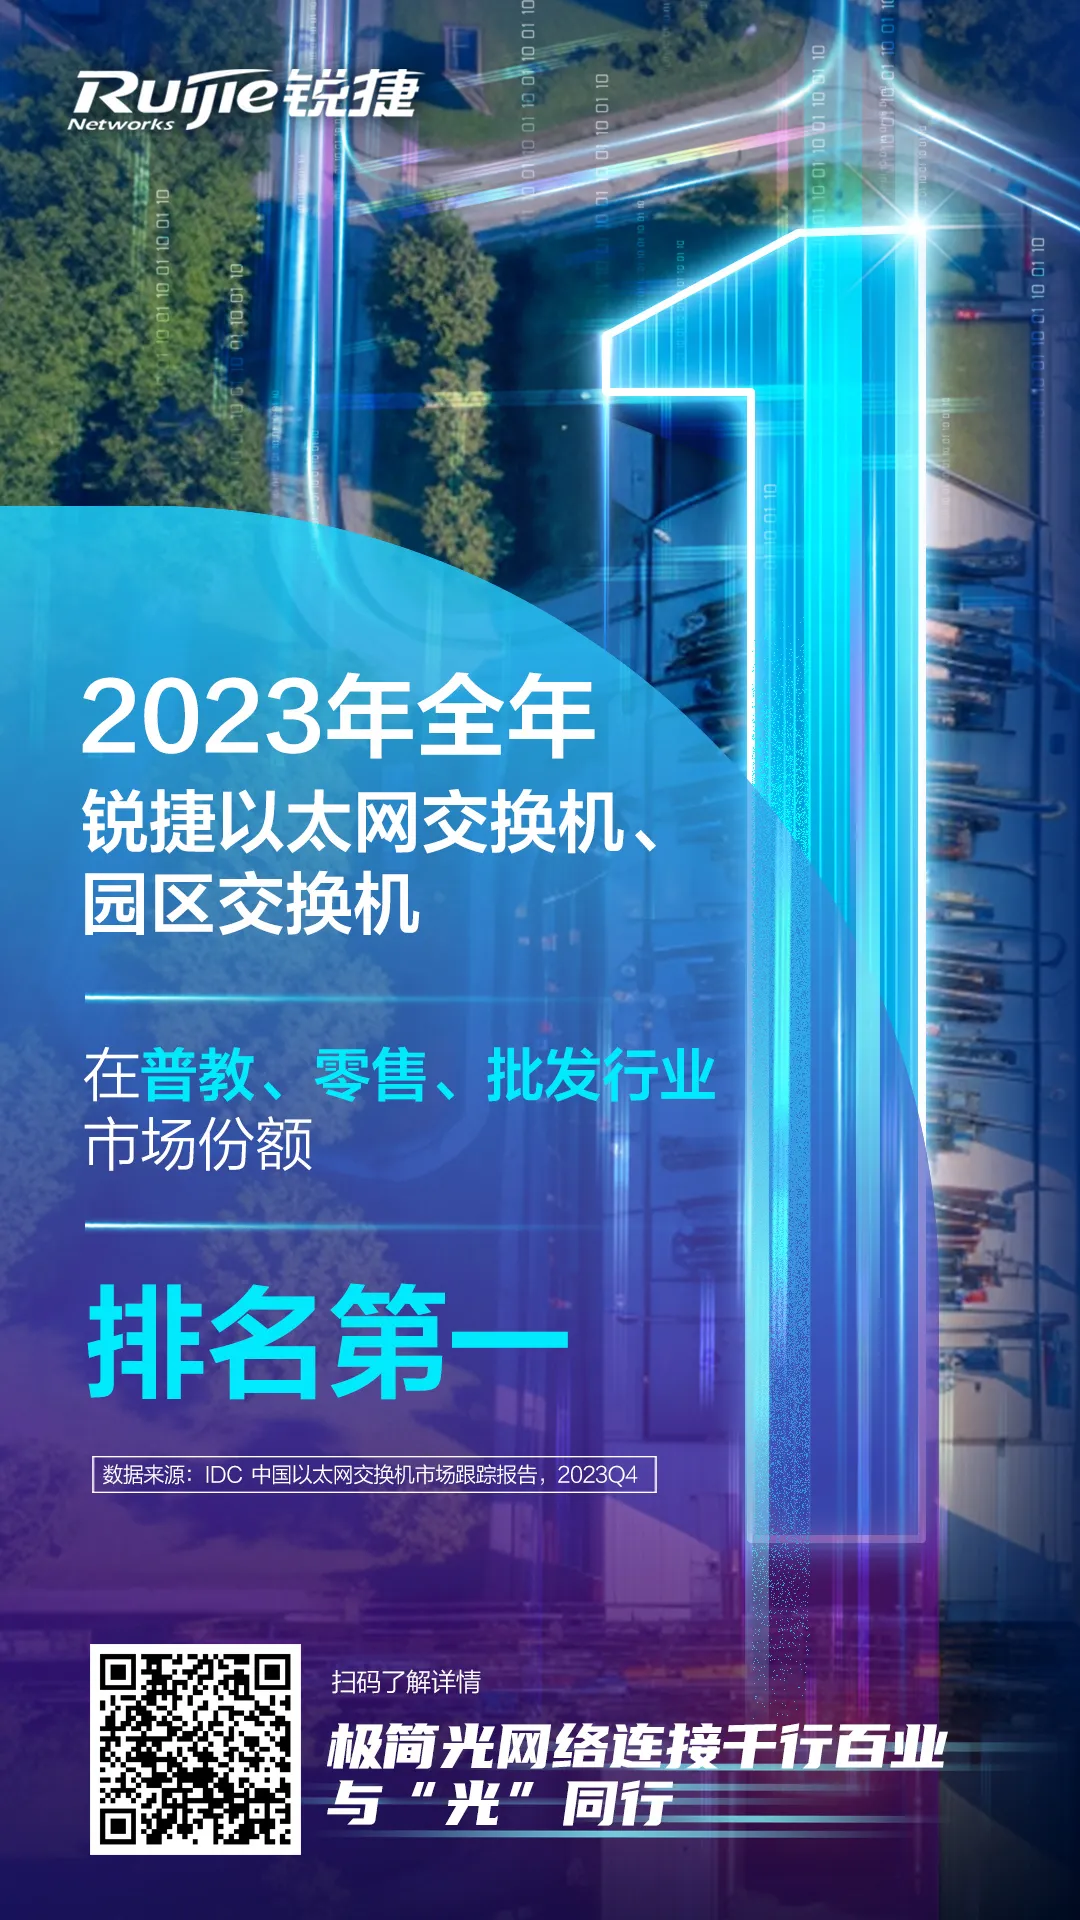 2023年全年锐捷以太网交换机、园区交换机在普教、零售、批发行业市场份额排名第一